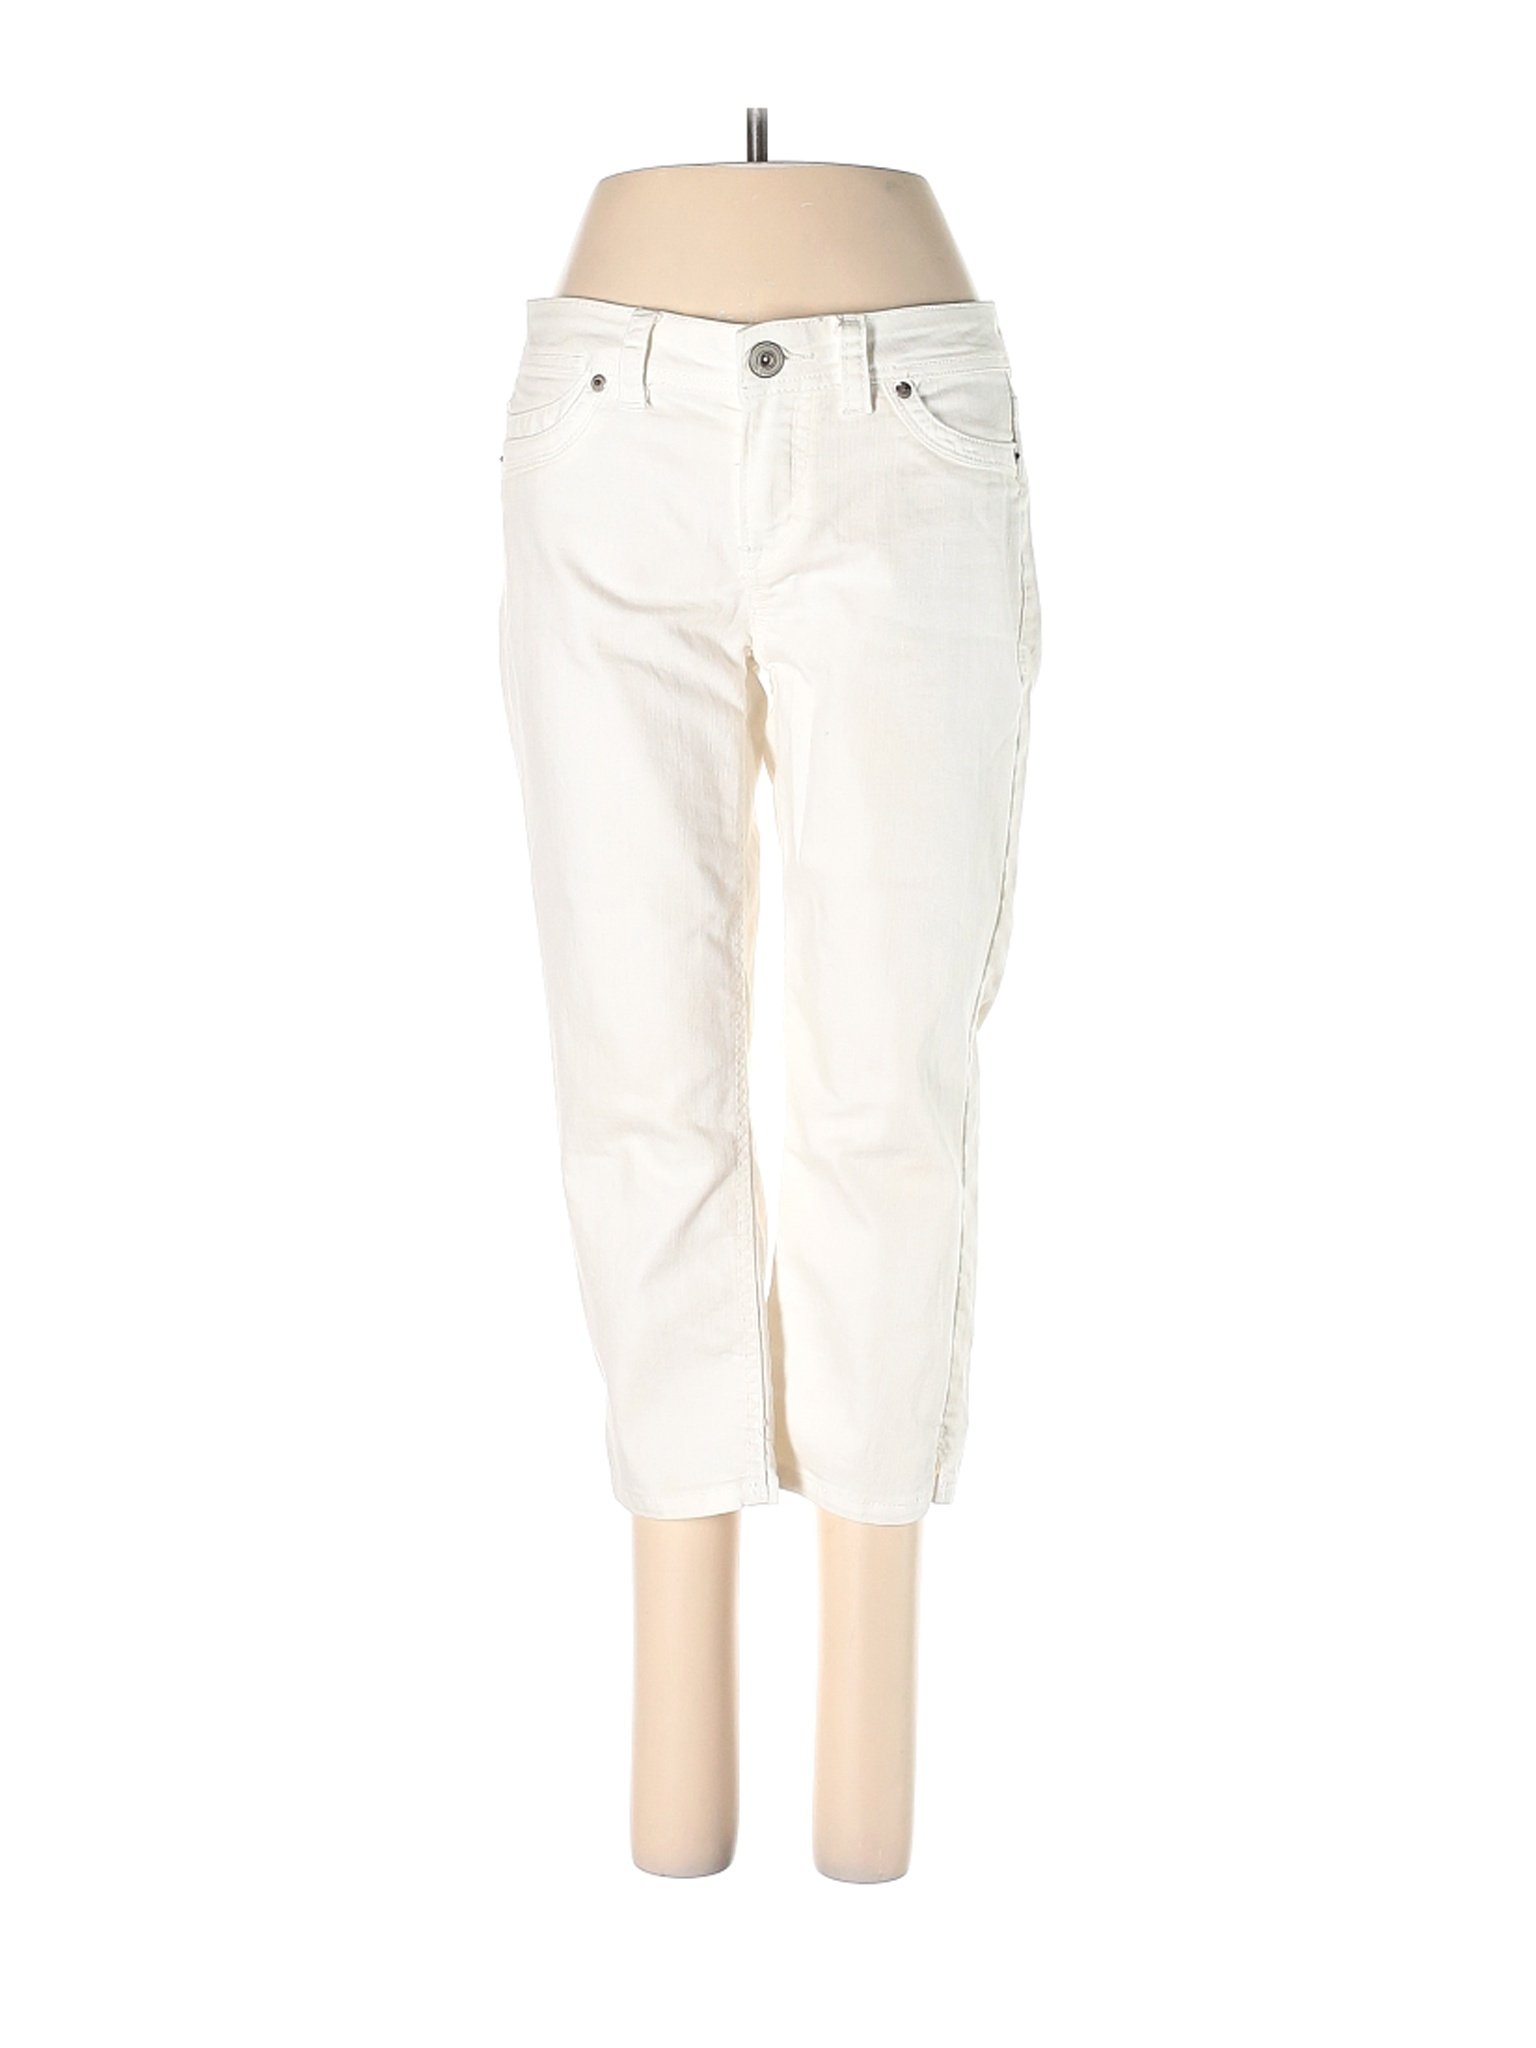 Jordache Women White Jeans 4 | eBay